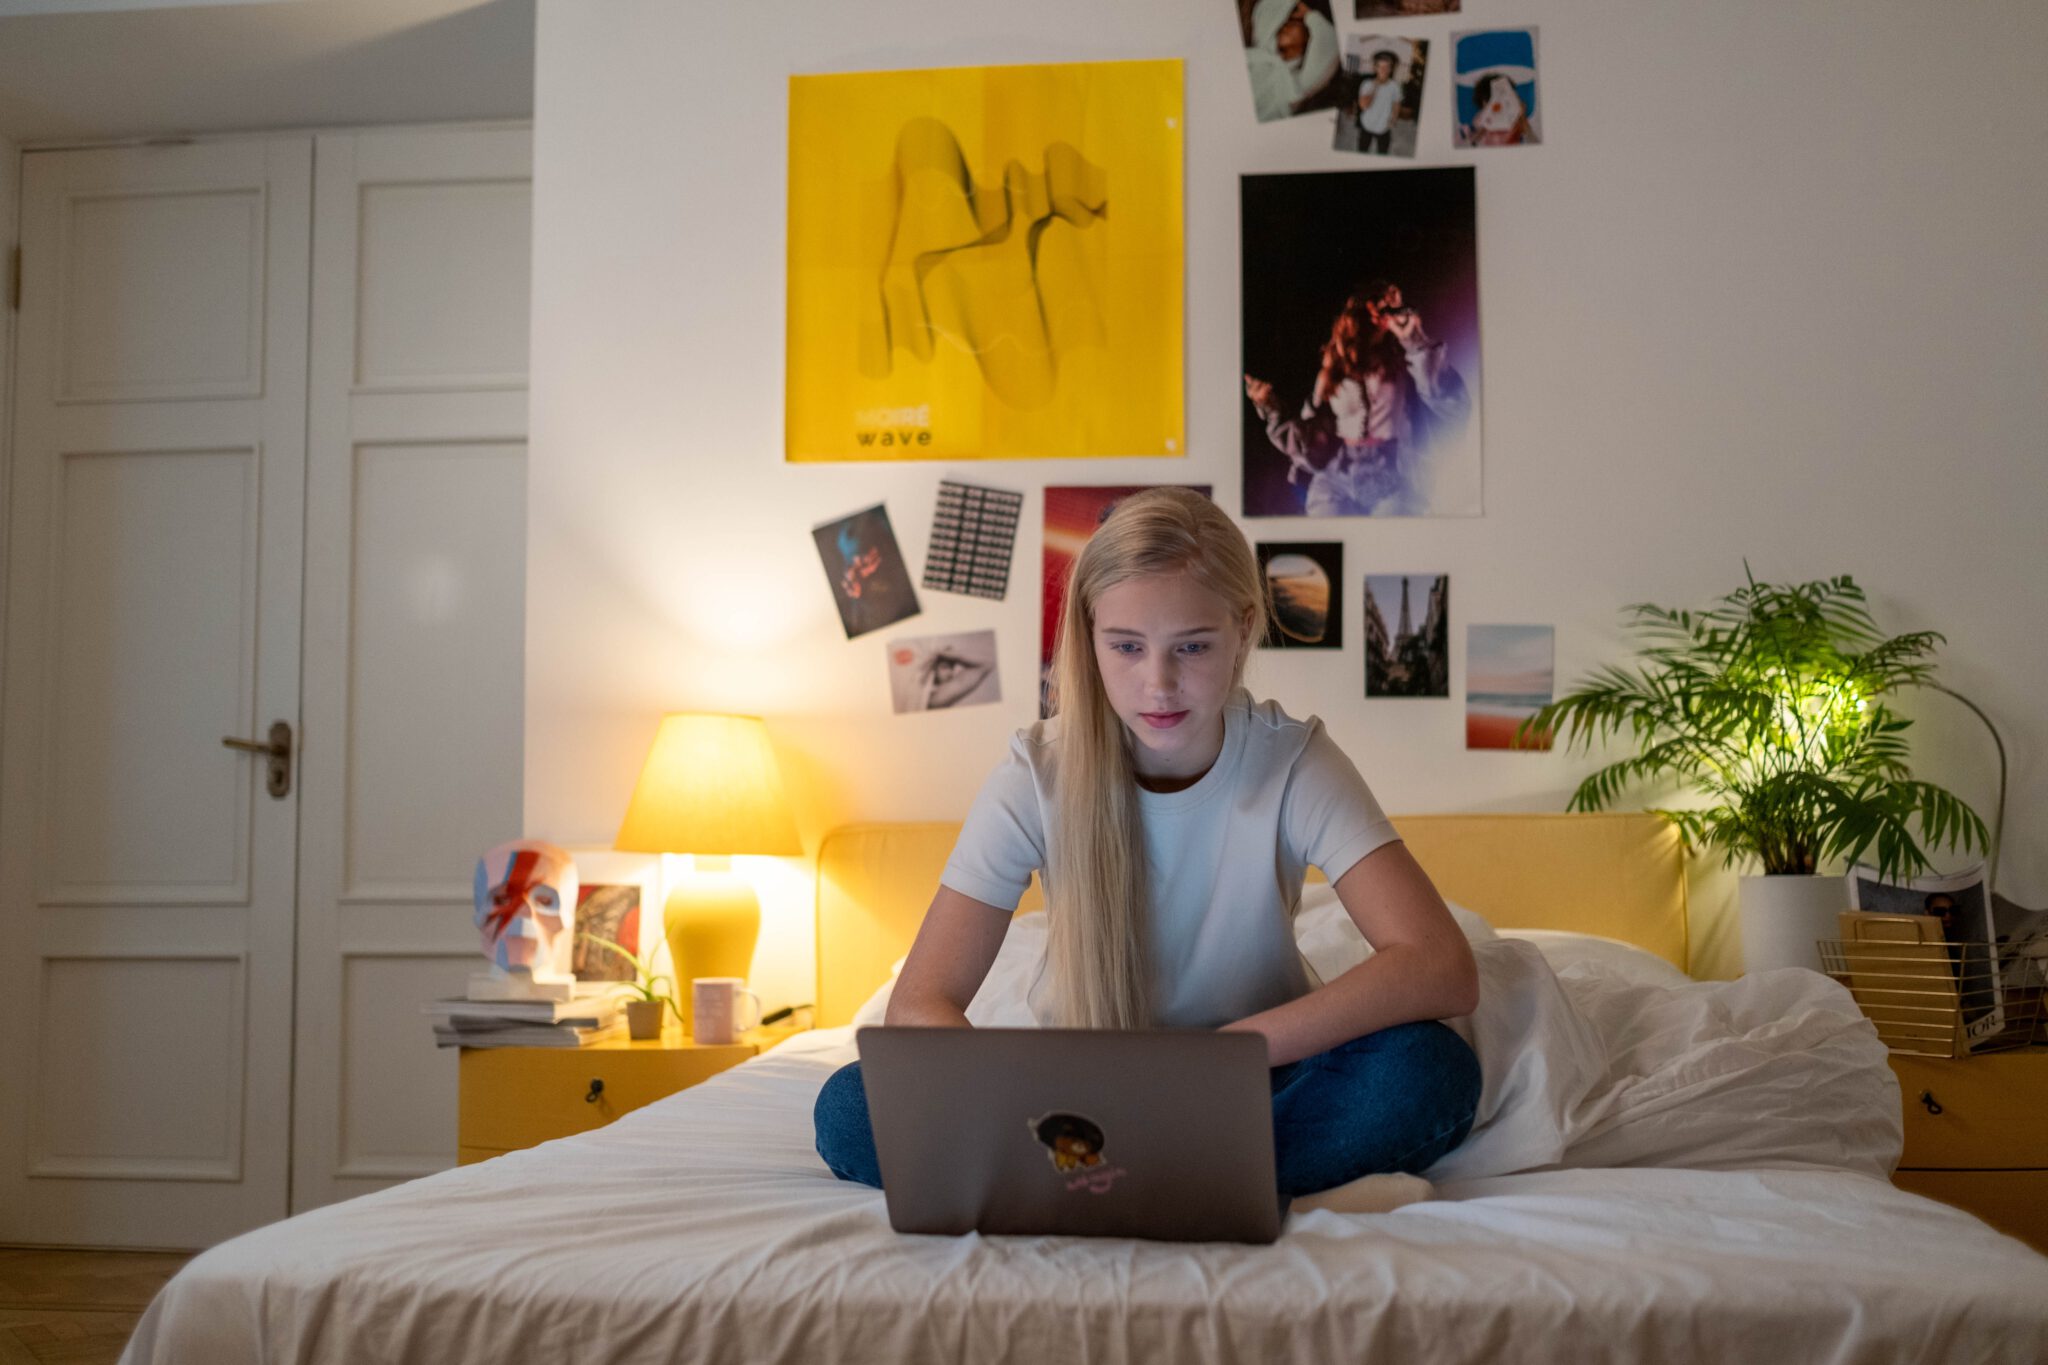 Tiener op bed met laptop ervaart stress